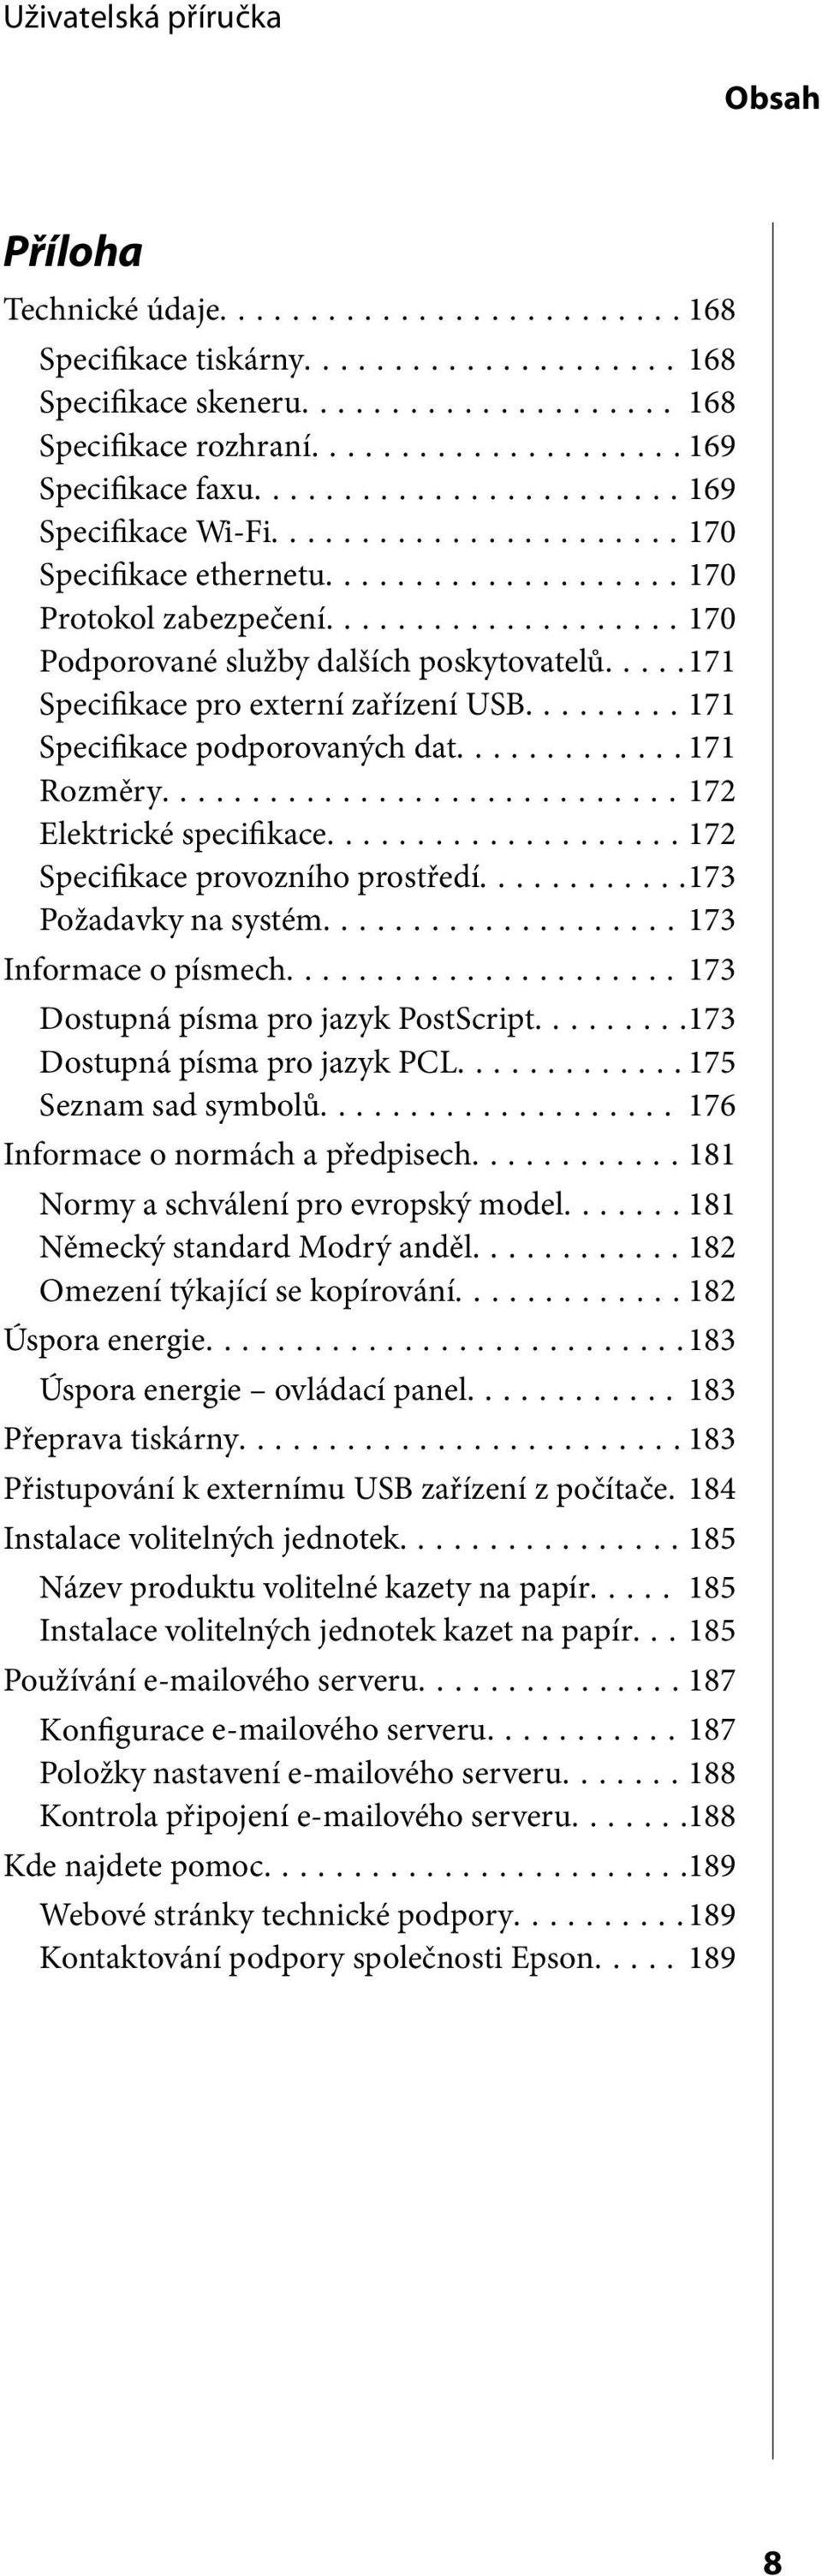 ..172 Specifikace provozního prostředí...173 Požadavky na systém...173 Informace o písmech...173 Dostupná písma pro jazyk PostScript...173 Dostupná písma pro jazyk PCL...175 Seznam sad symbolů.